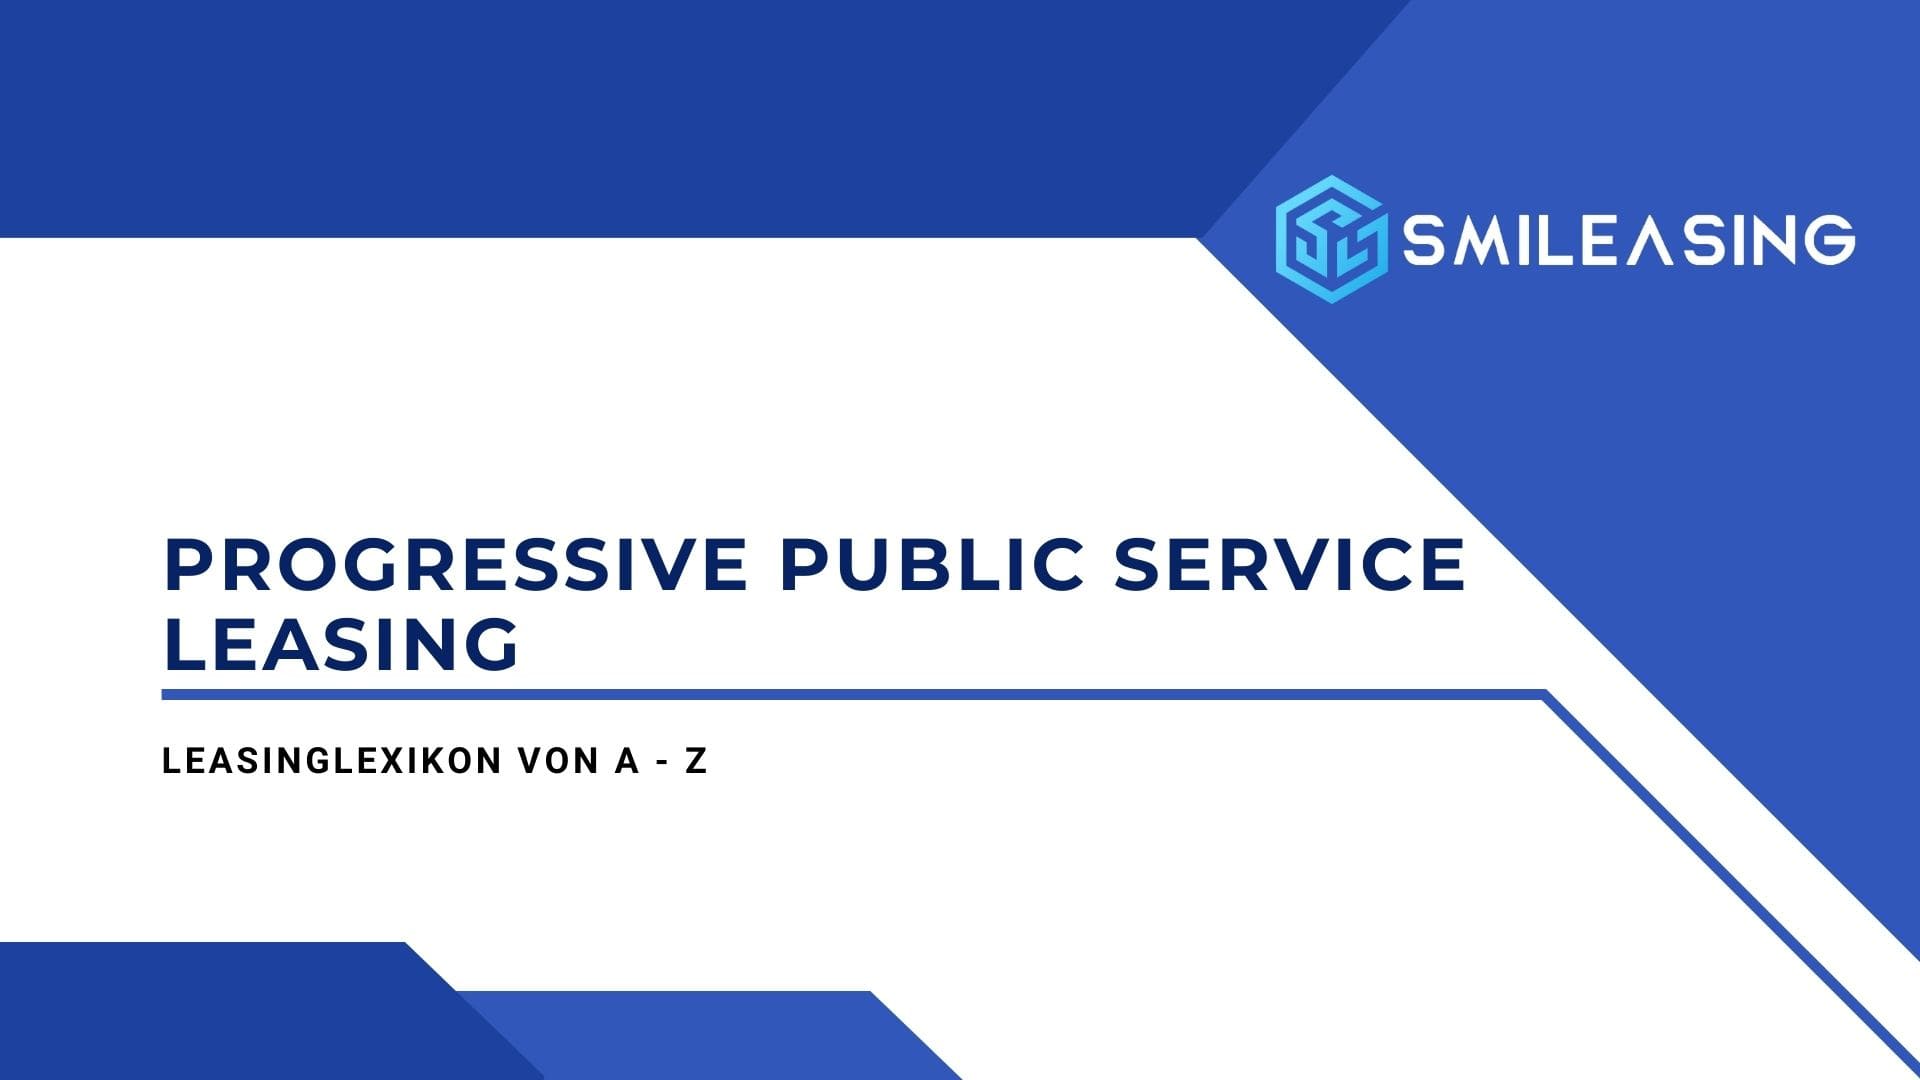 Progressive Public Service Leasing - Leasinglexikon